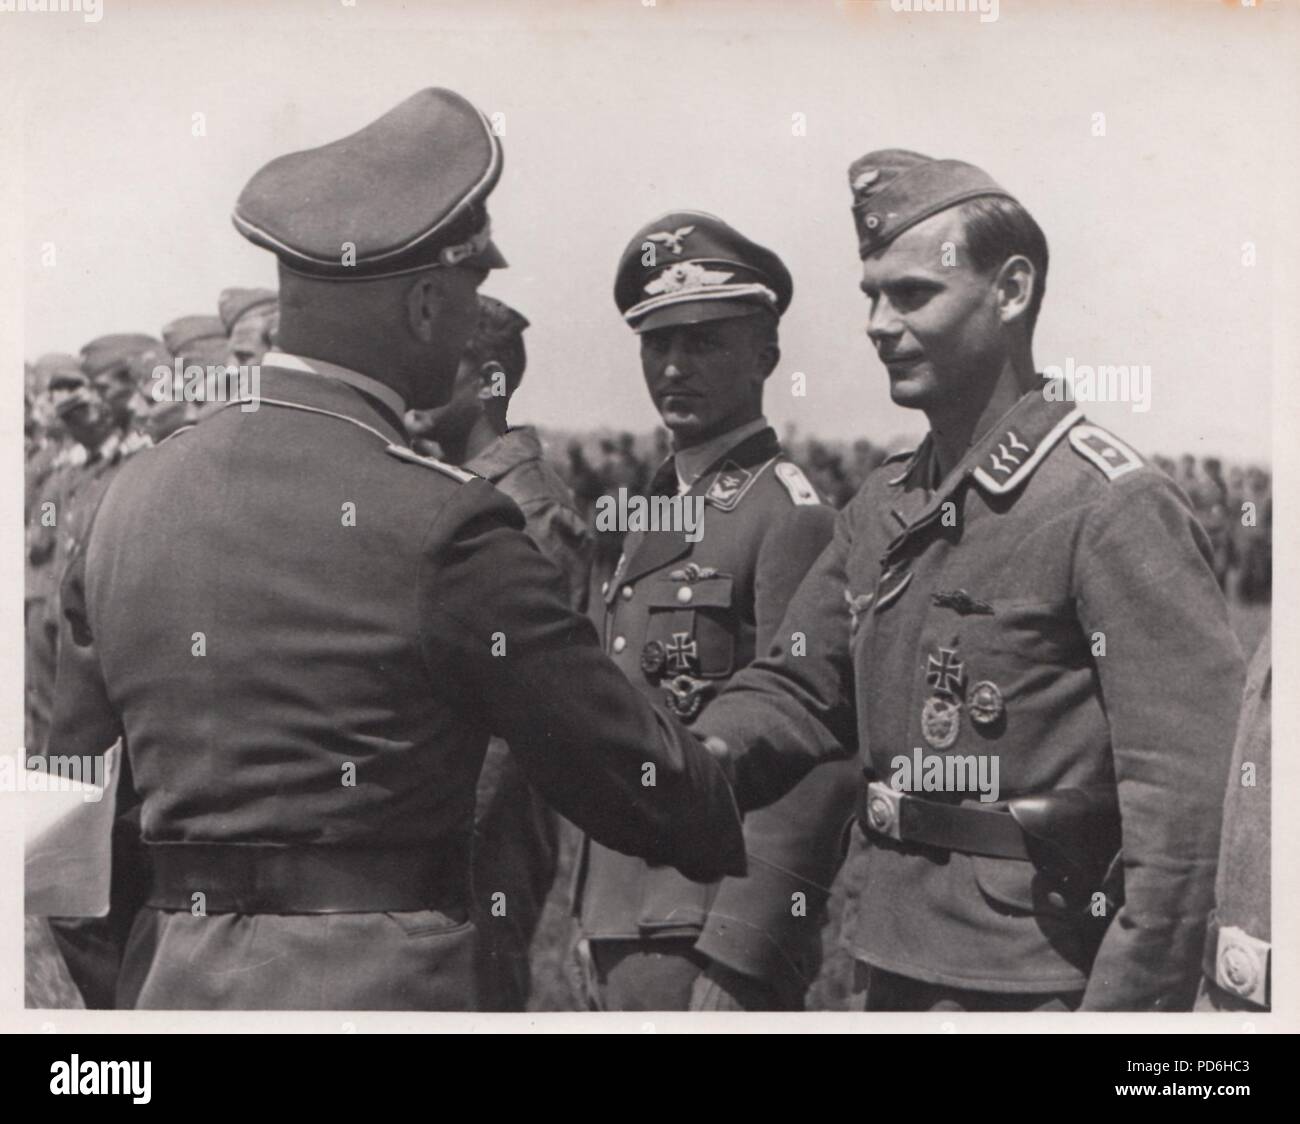 Droit de l'album photo de l'Oberleutnant Oscar Müller de la Kampfgeschwader 1 : Gruppenkommandeur Hauptmann Otto Stams décerne des prix à des aviateurs du II./KG 1 à l'été 1941. Led Stams Otto II. Gruppe de 1 kg au cours de l'été 1941 et reçoit la Croix de Chevalier de la Croix de fer le 1er août 1941. Banque D'Images